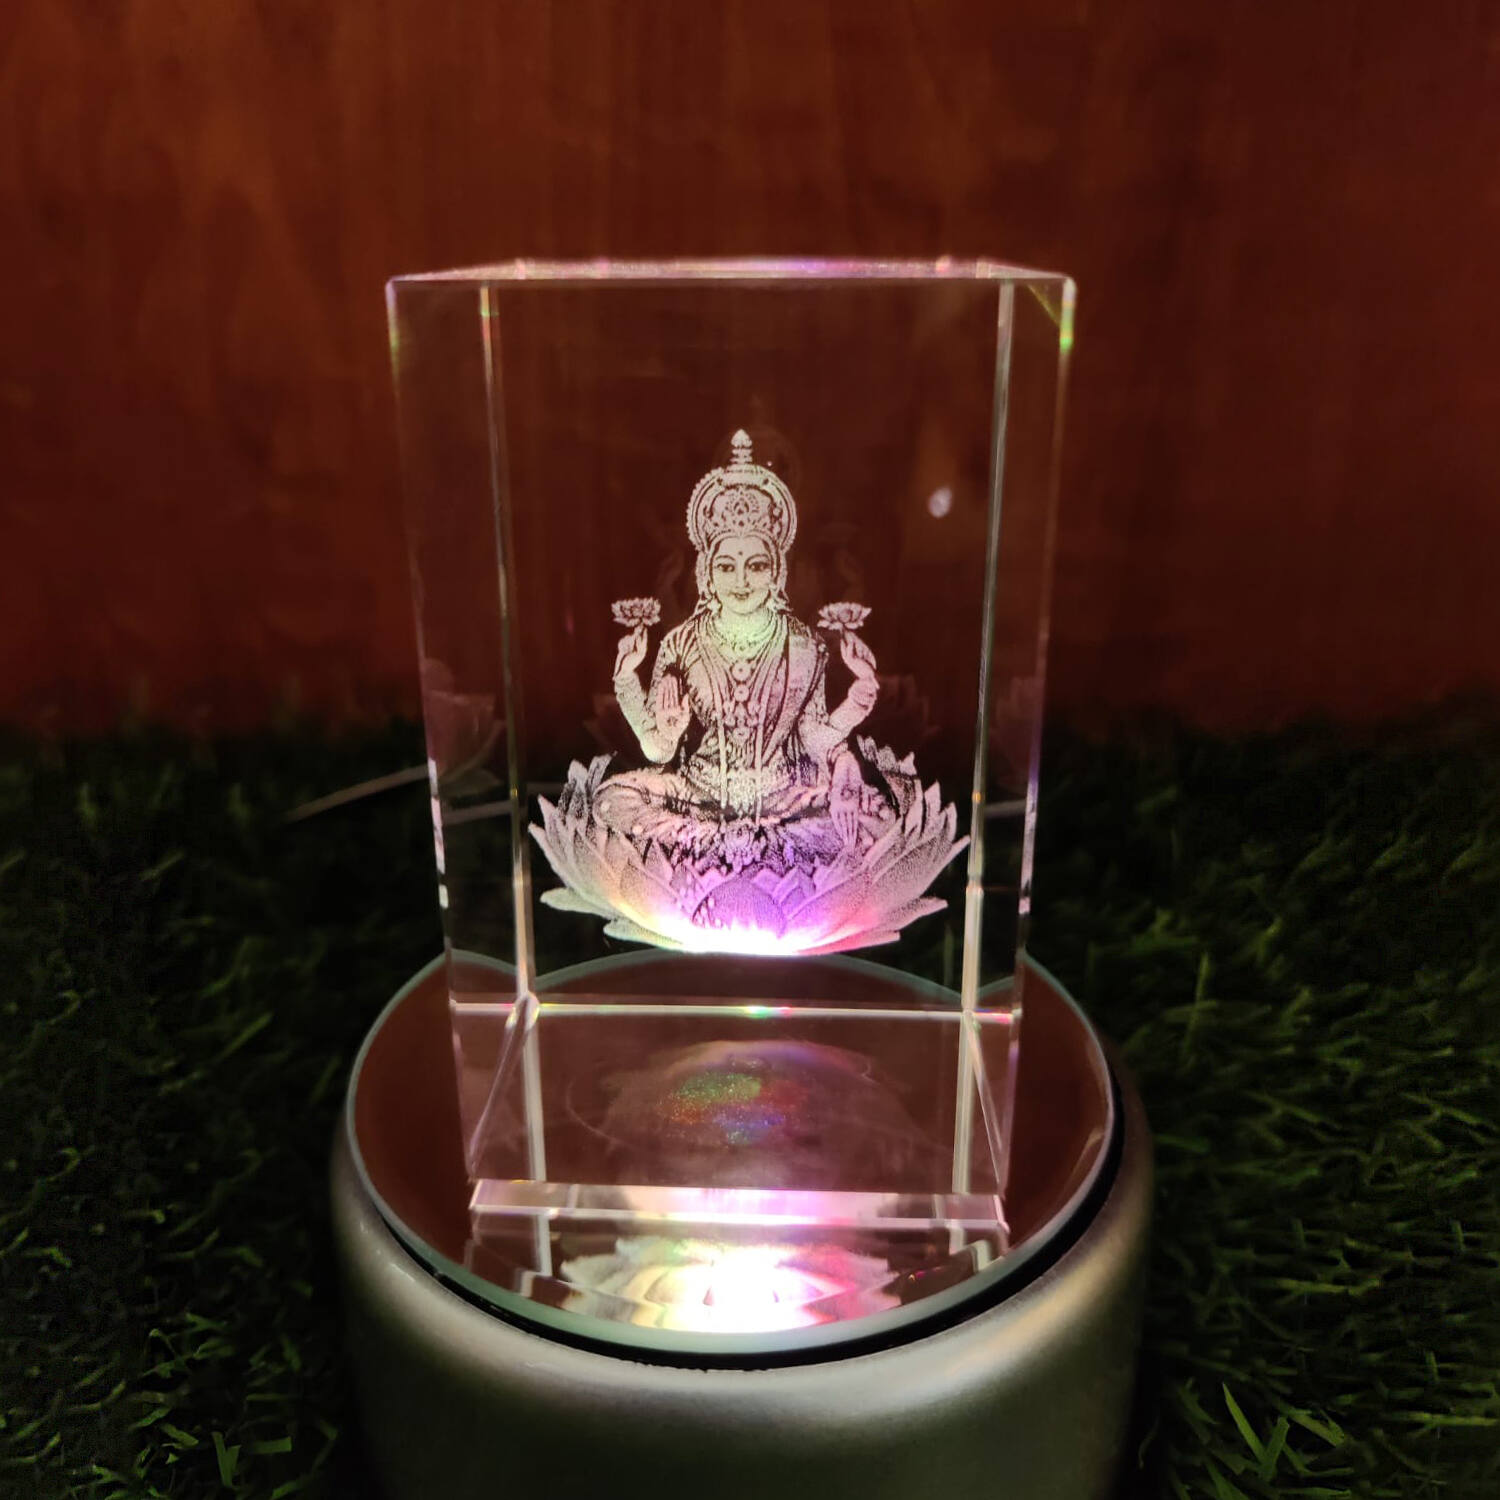 50x80x50mm 3d Crystal Personalized Gift at 540.00 INR in Kolkata | Vision  Media (calcutta) Pvt. Ltd.